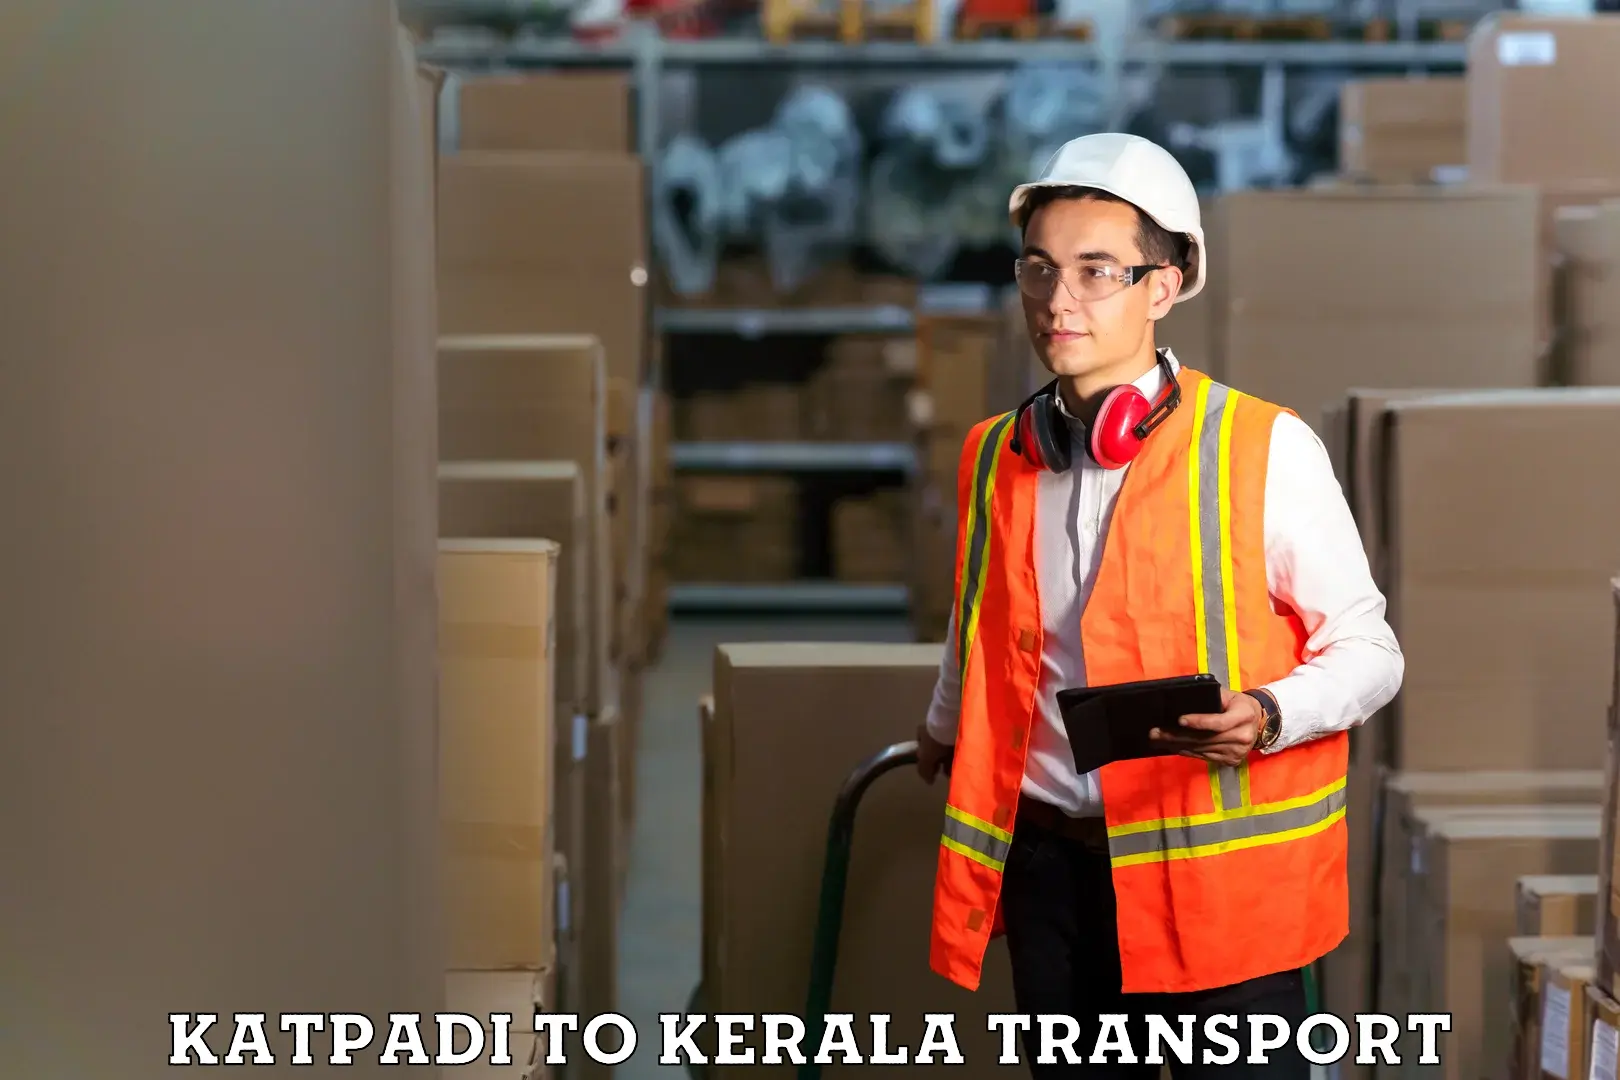 Nearest transport service Katpadi to Kozhikode